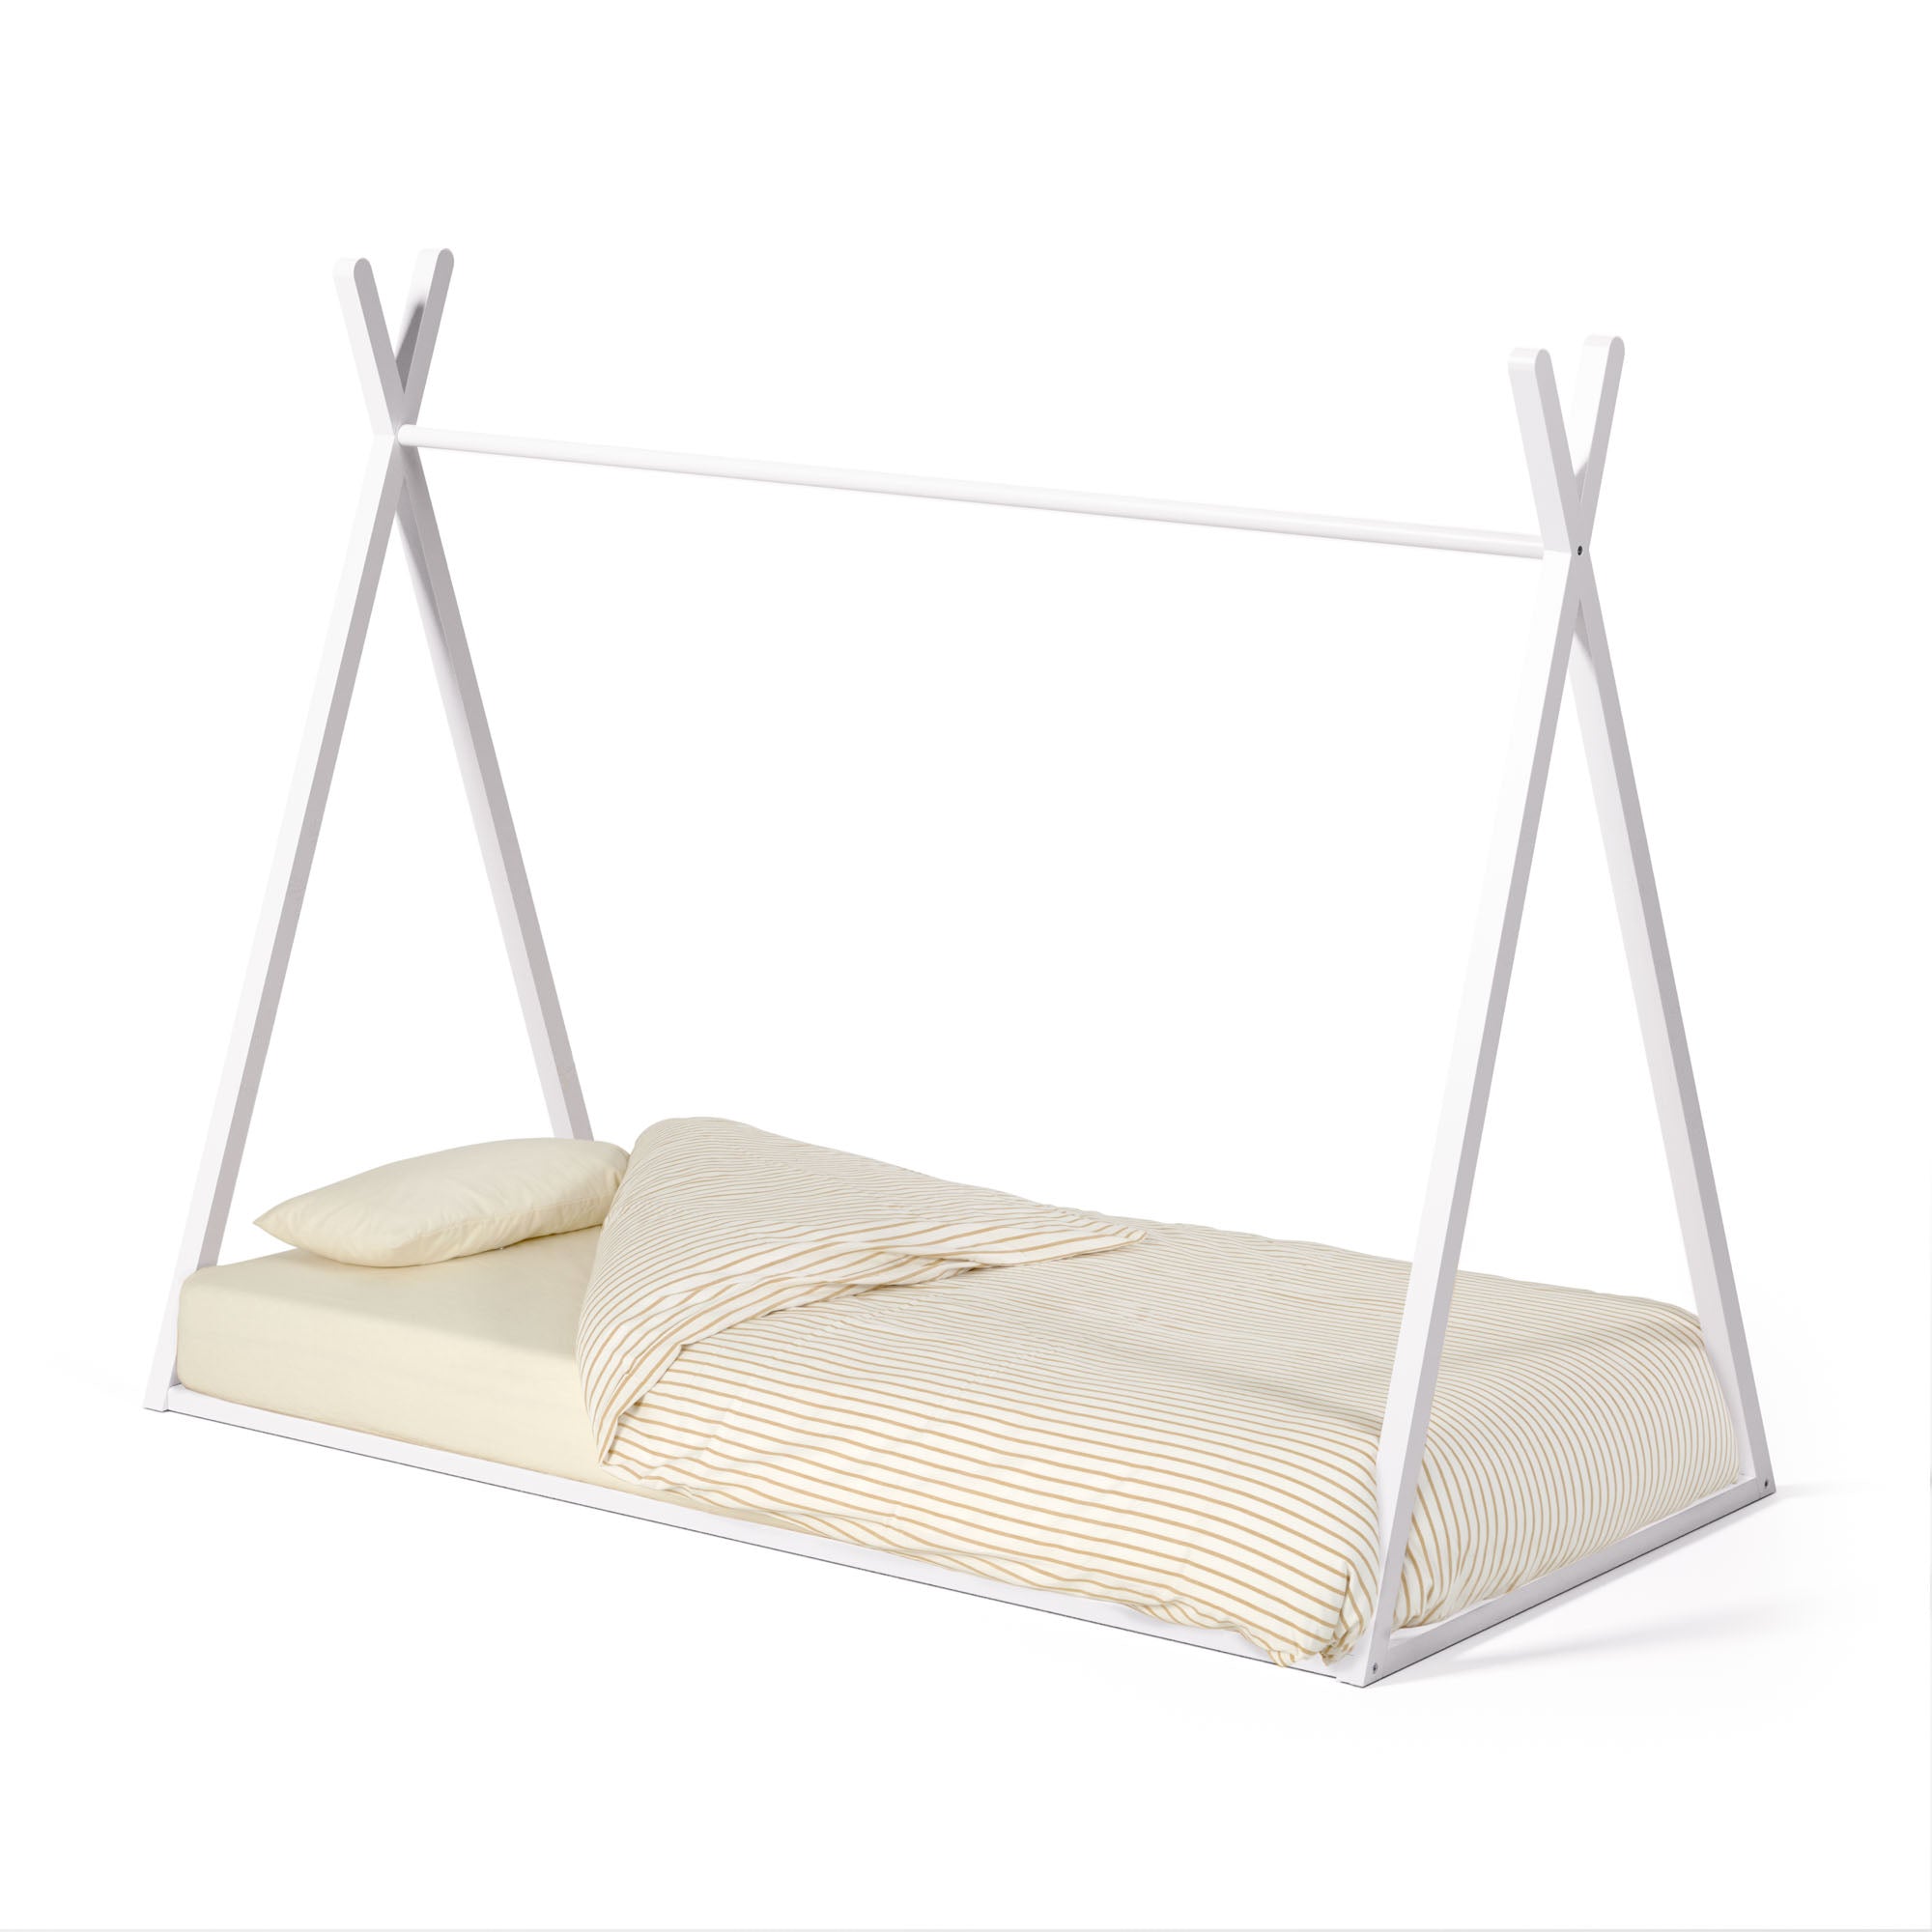 Maralis tipi sátorágy tömör bükkfából, fehér kivitelben, 90 x 190 cm-es matracokhoz